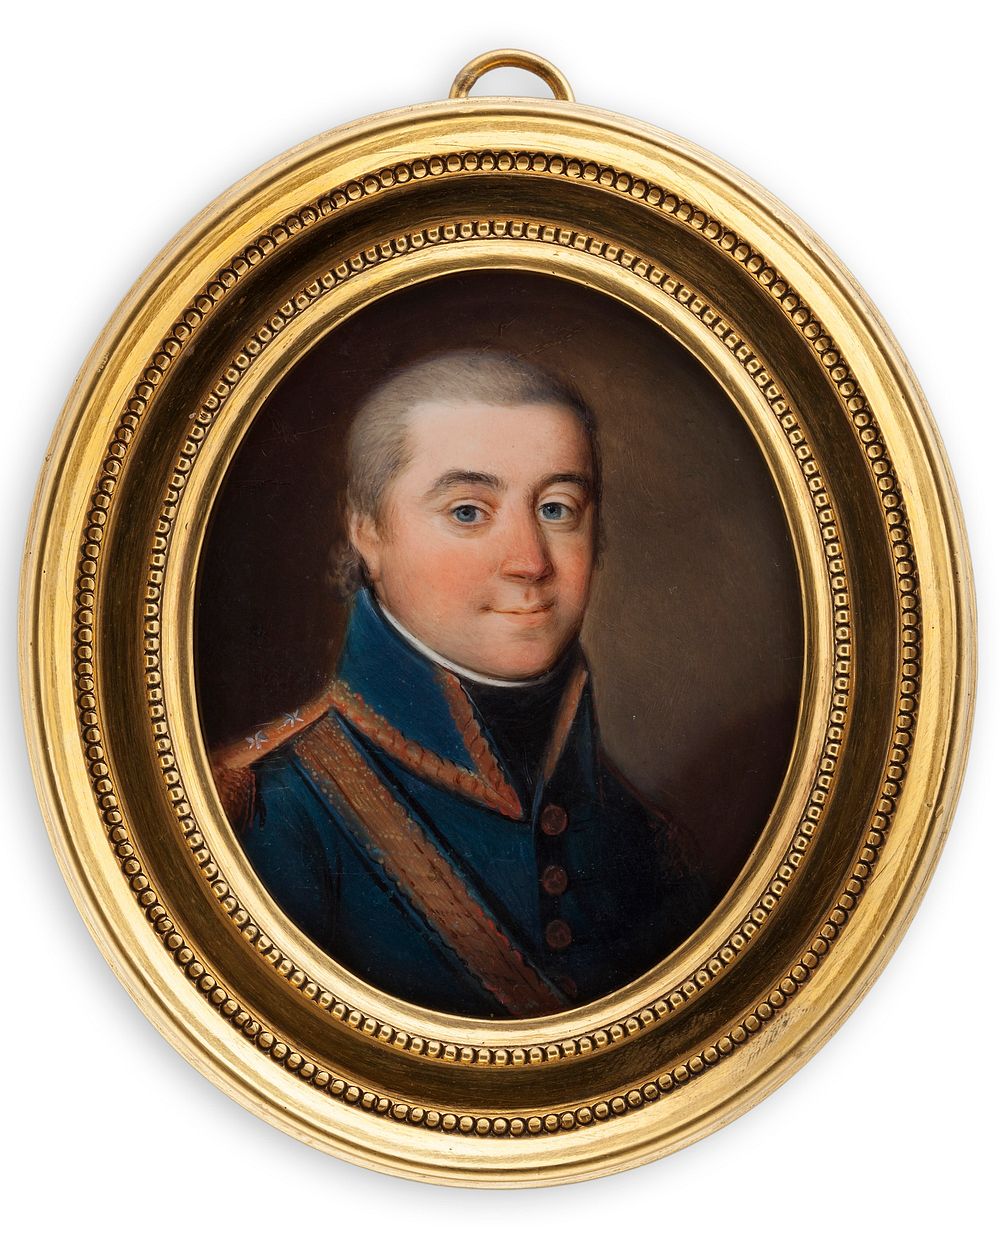 Lieutenent malmborg, 1772 - 1834